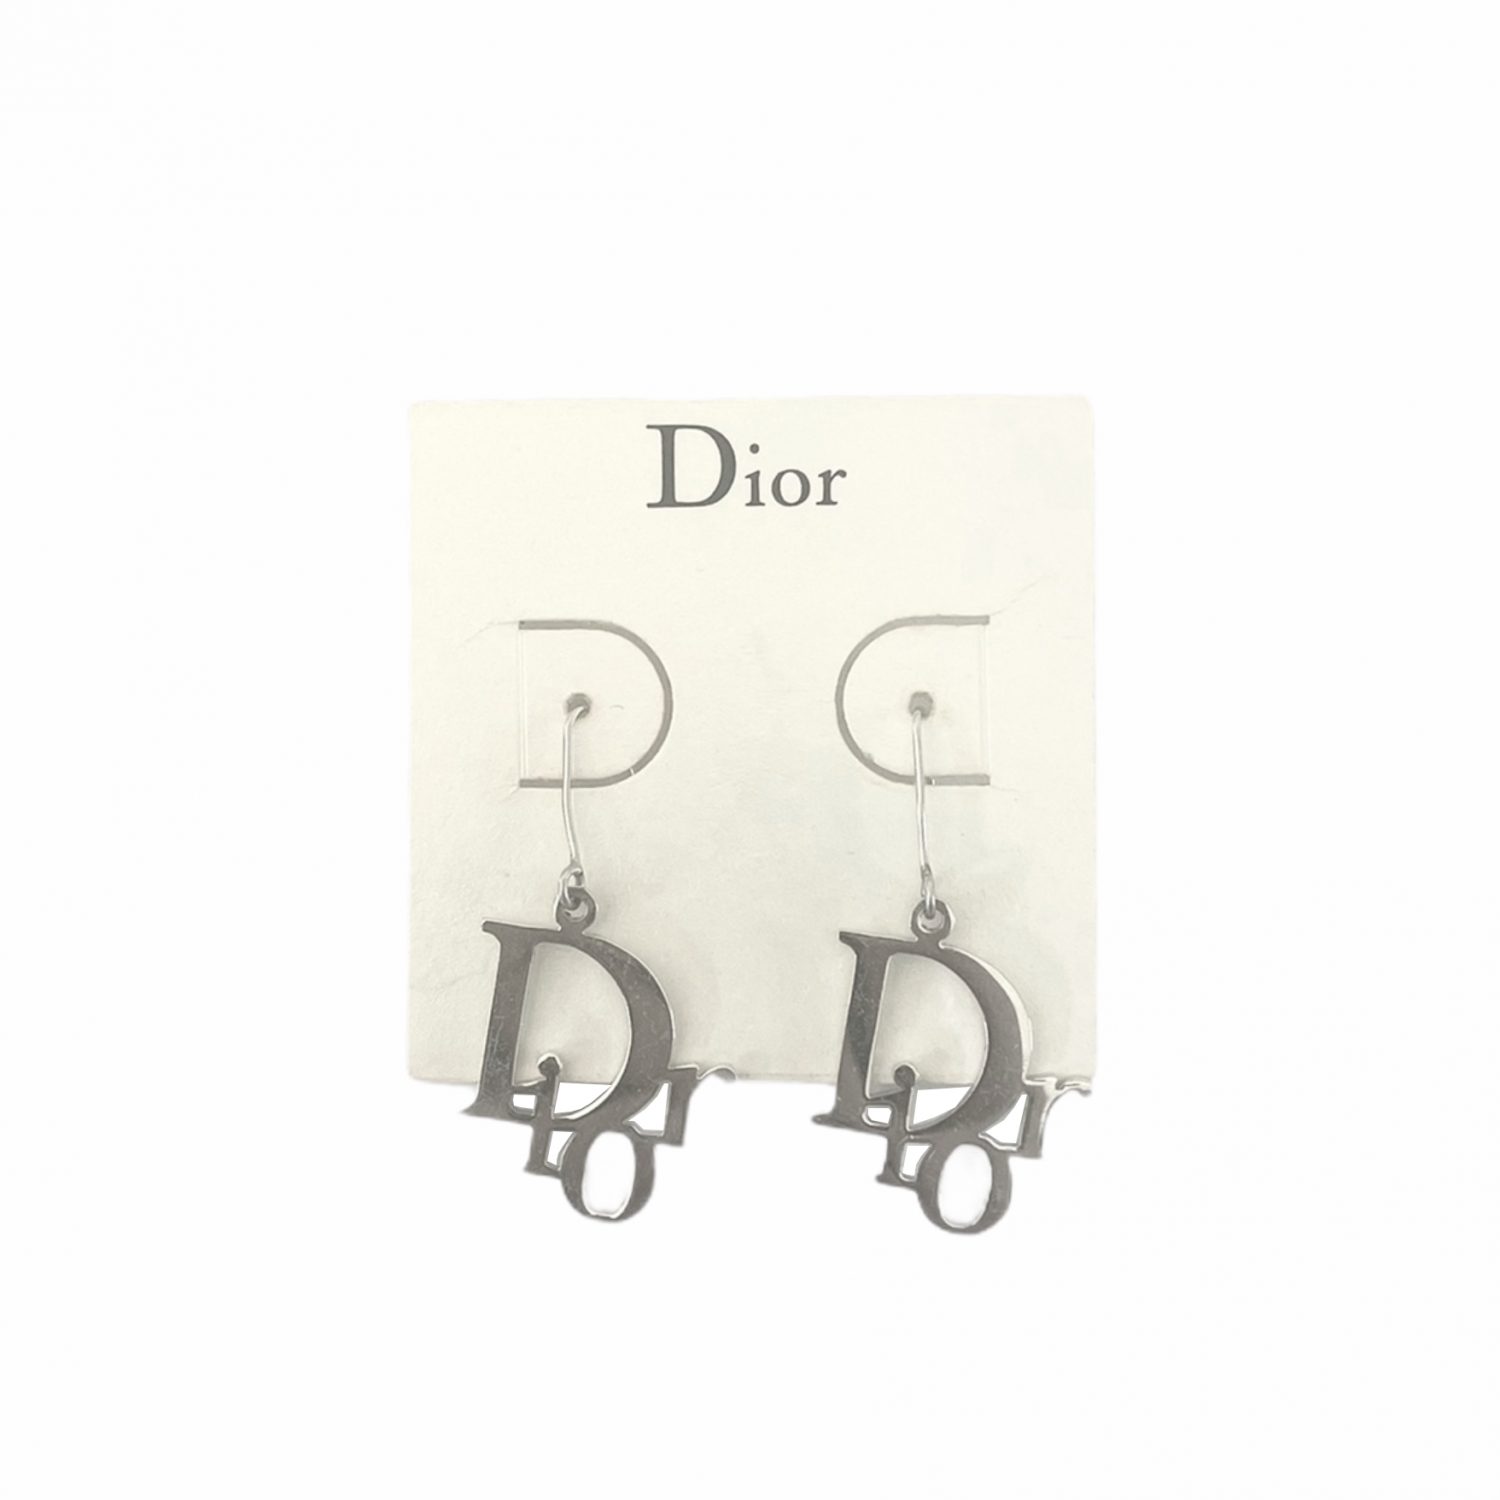 Vintage Dior Logo Drop Earrings in Silver | NITRYL